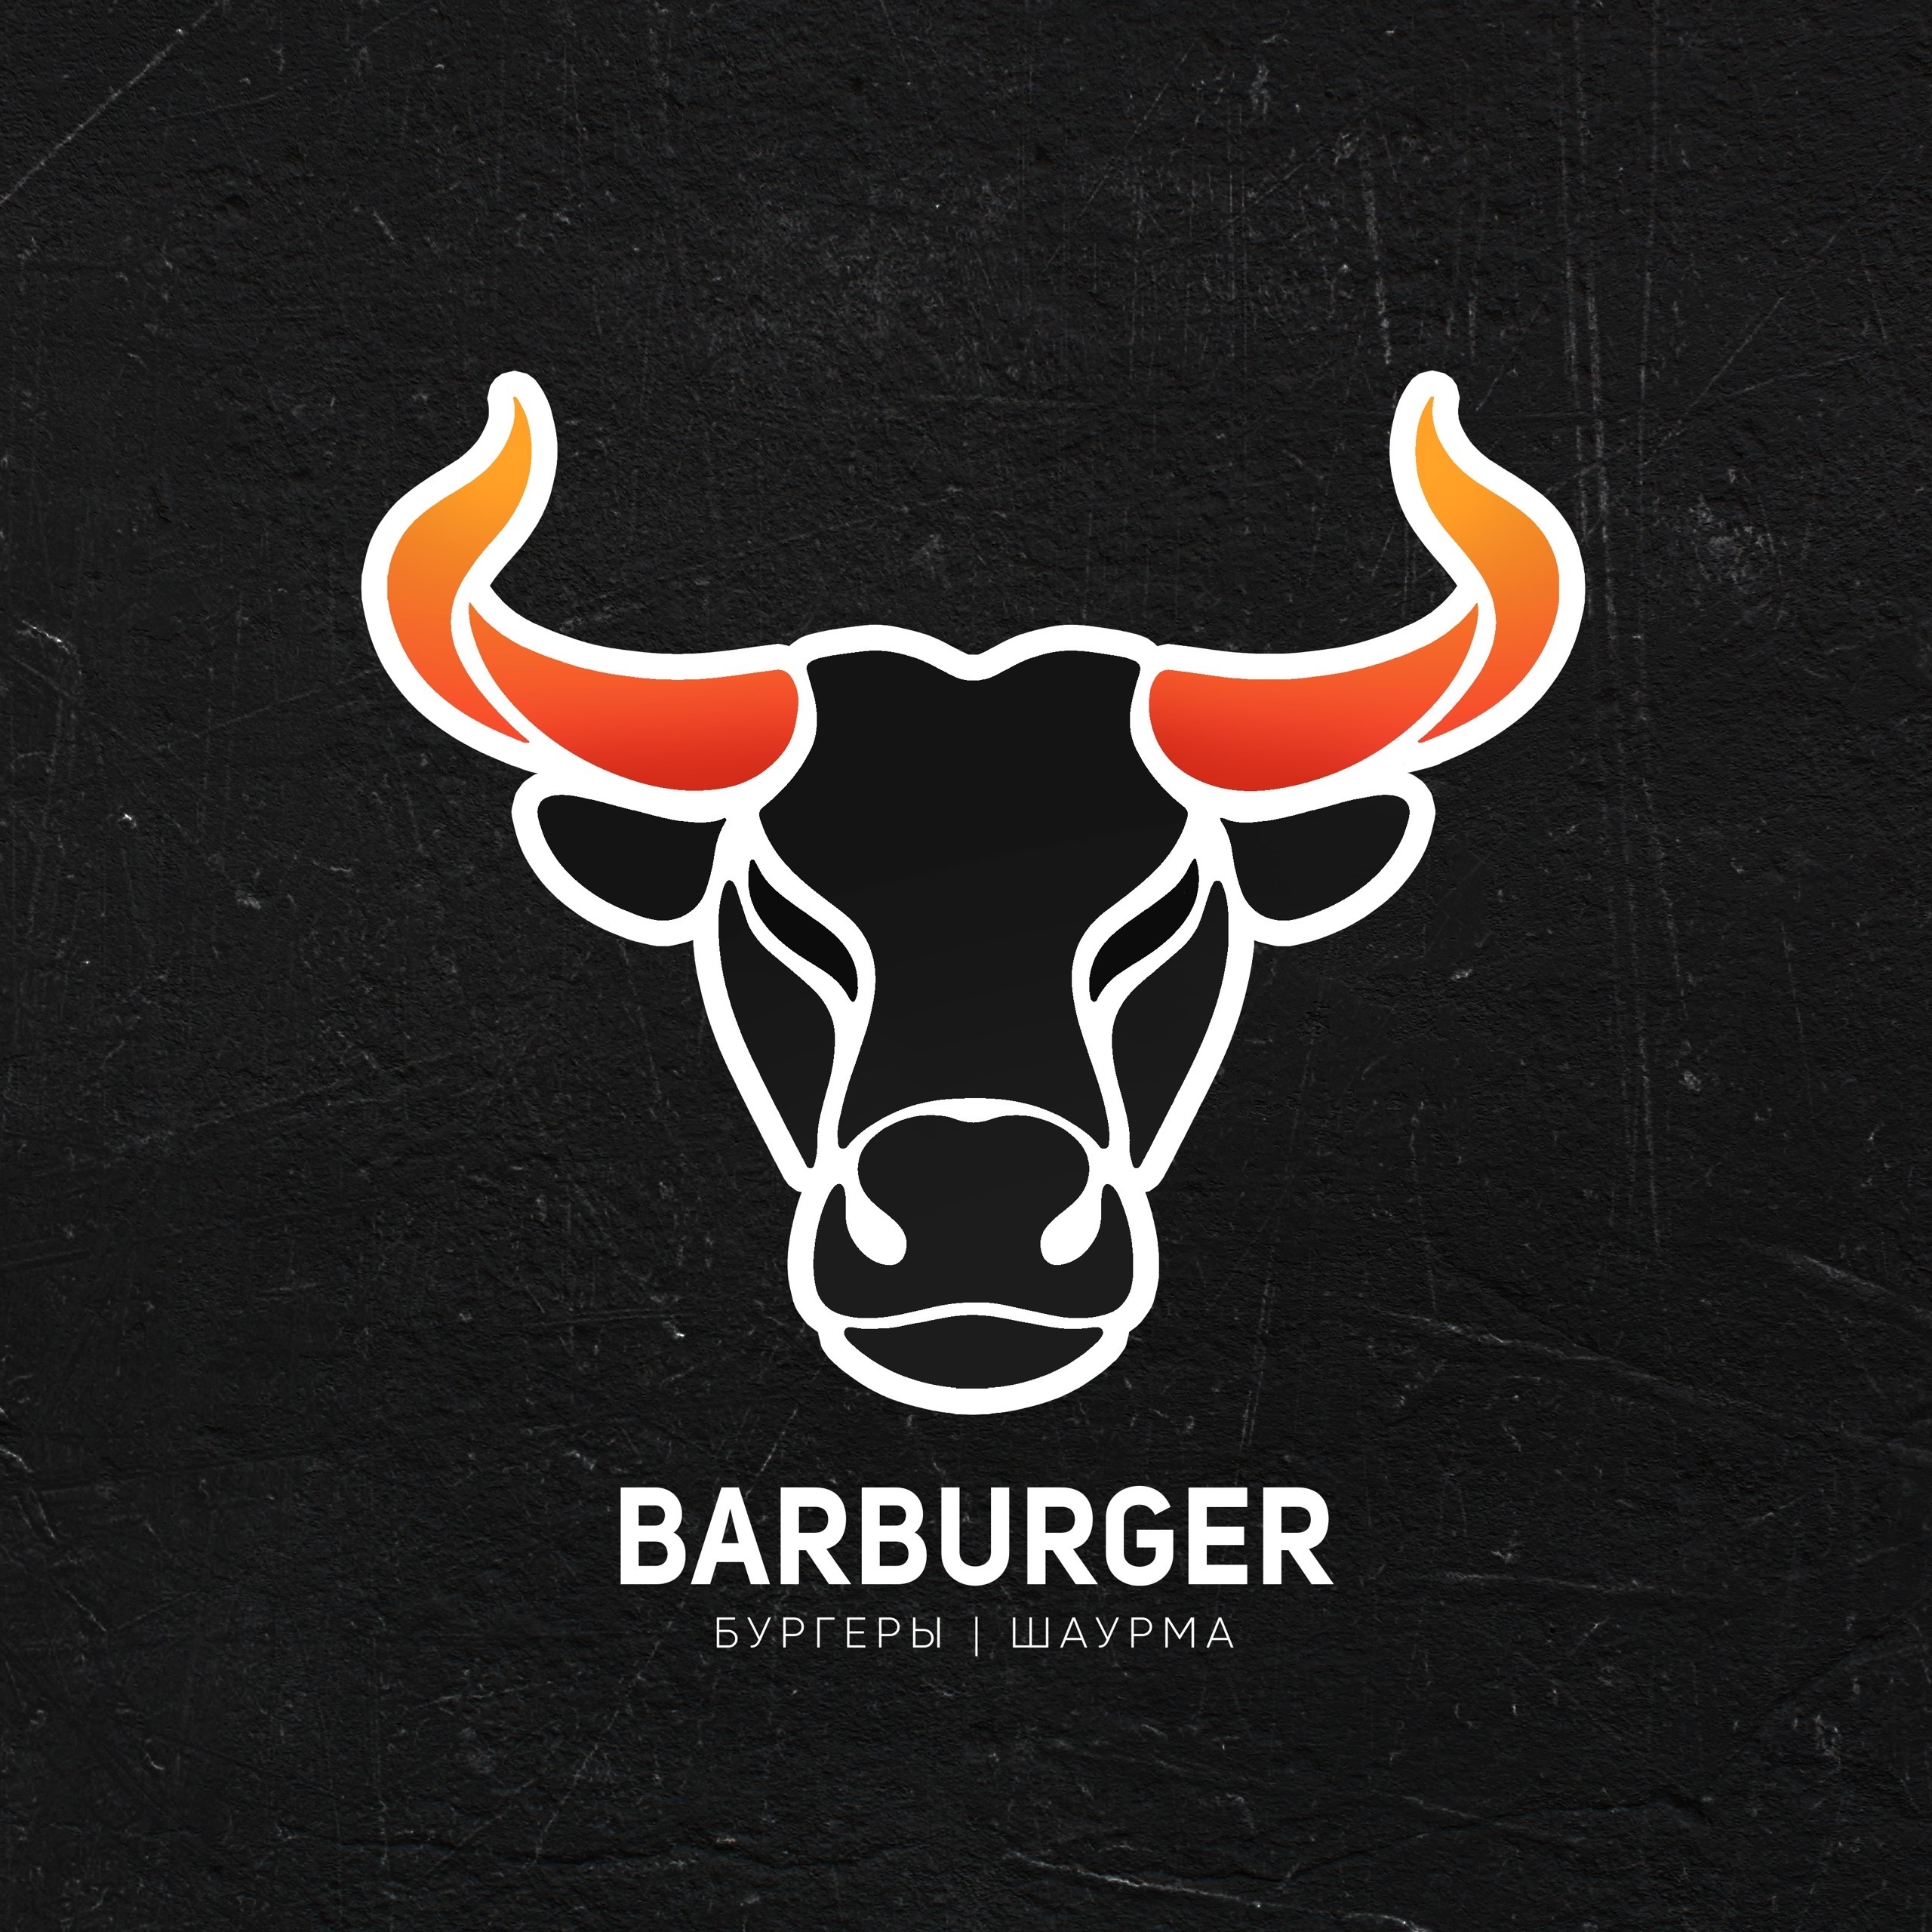 Barburger